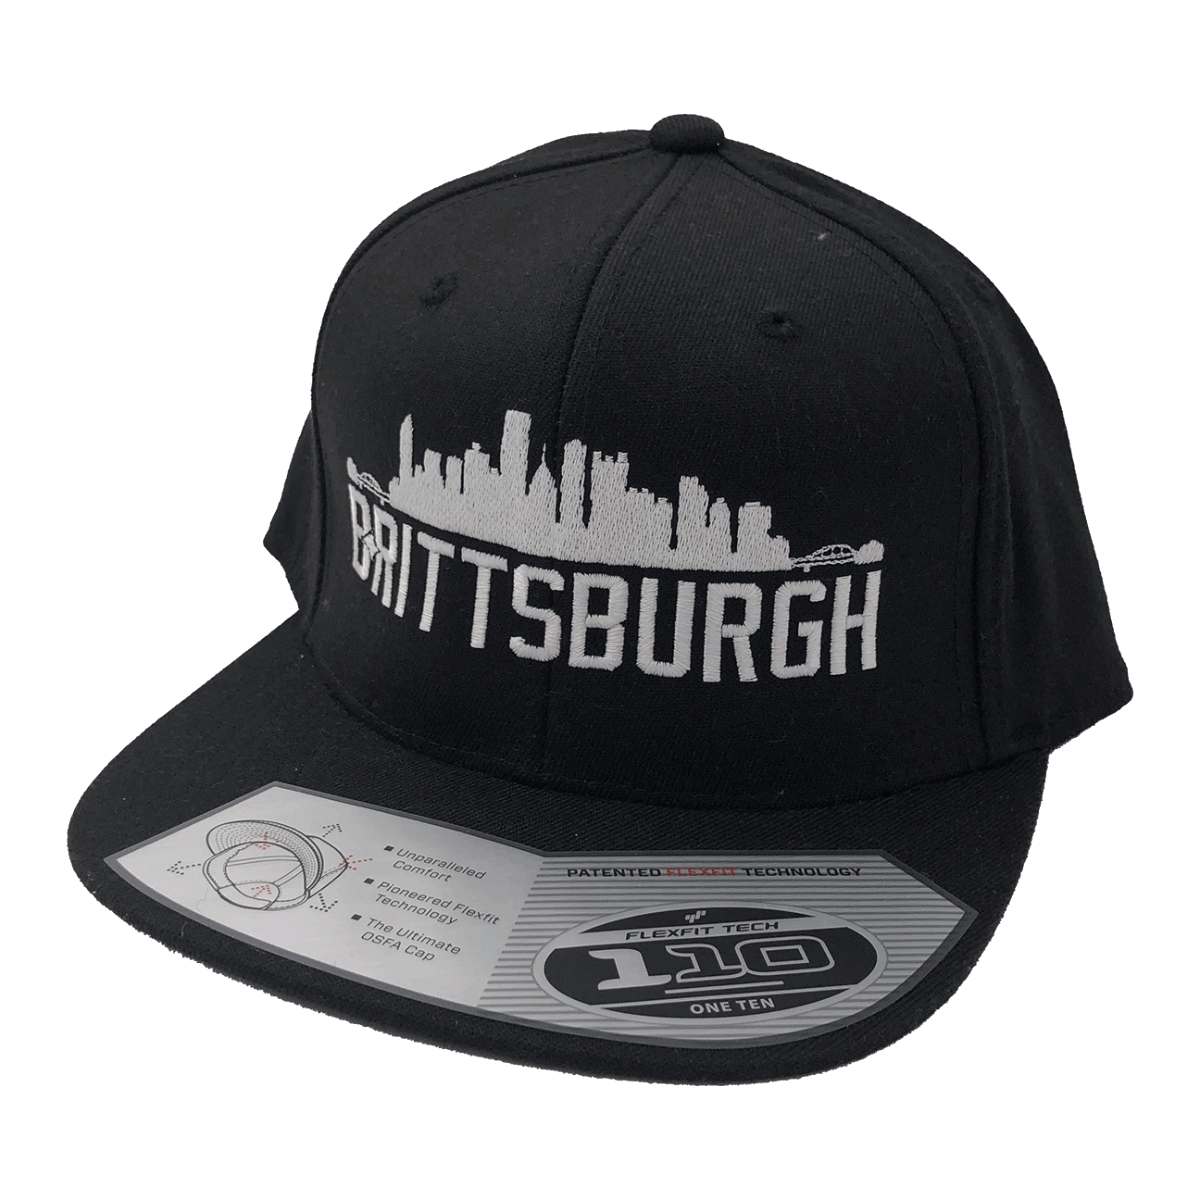 Brittsburgh Hat